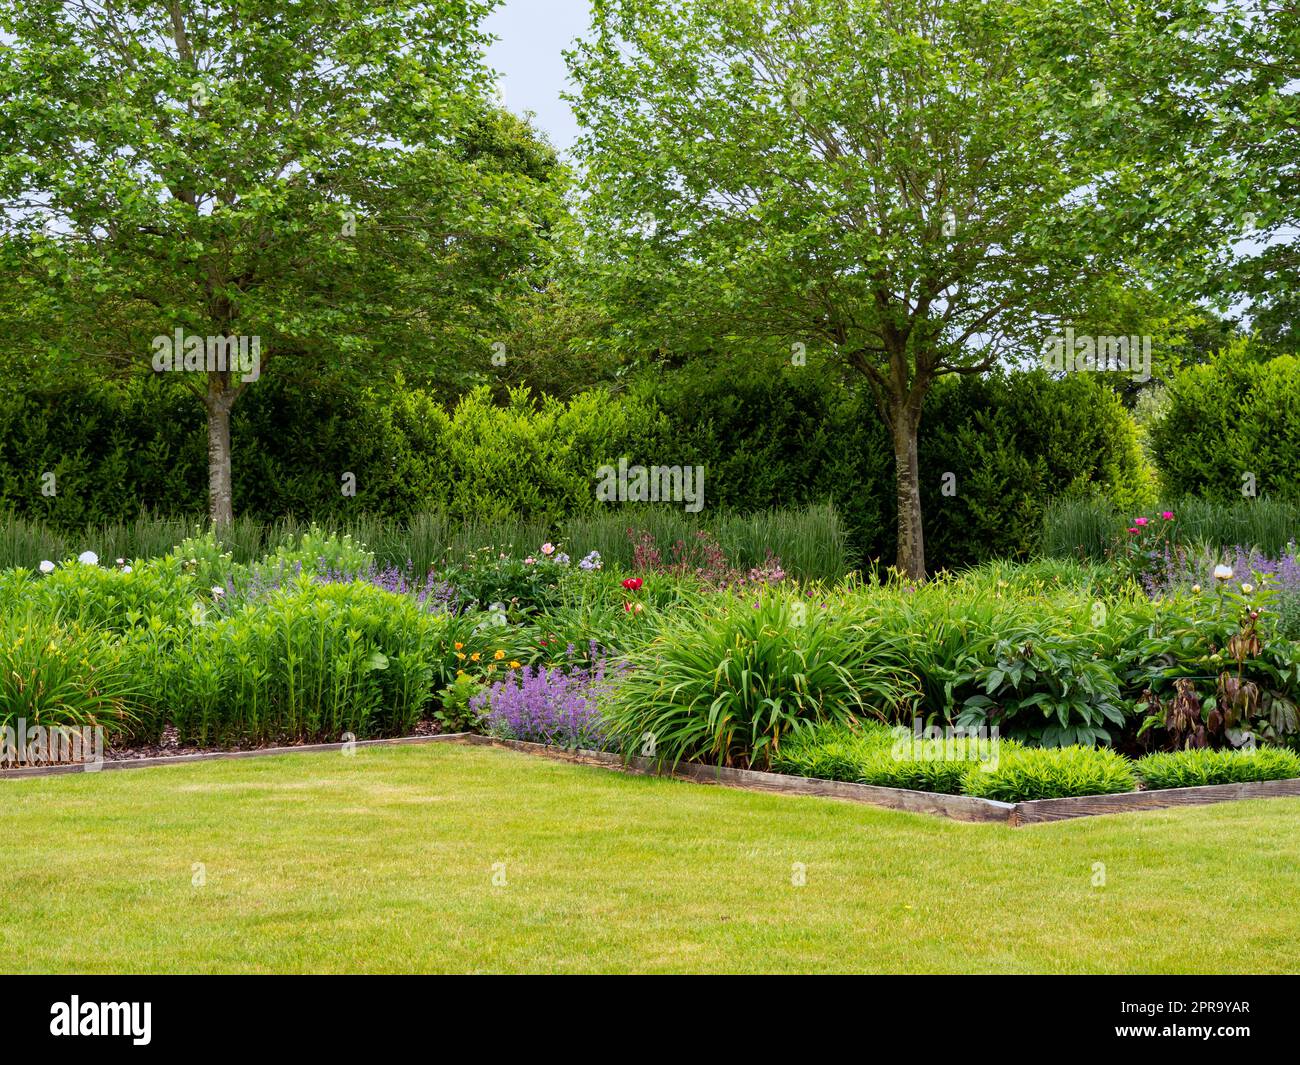 Parterres de fleurs et pelouse verte dans un jardin d'été Banque D'Images